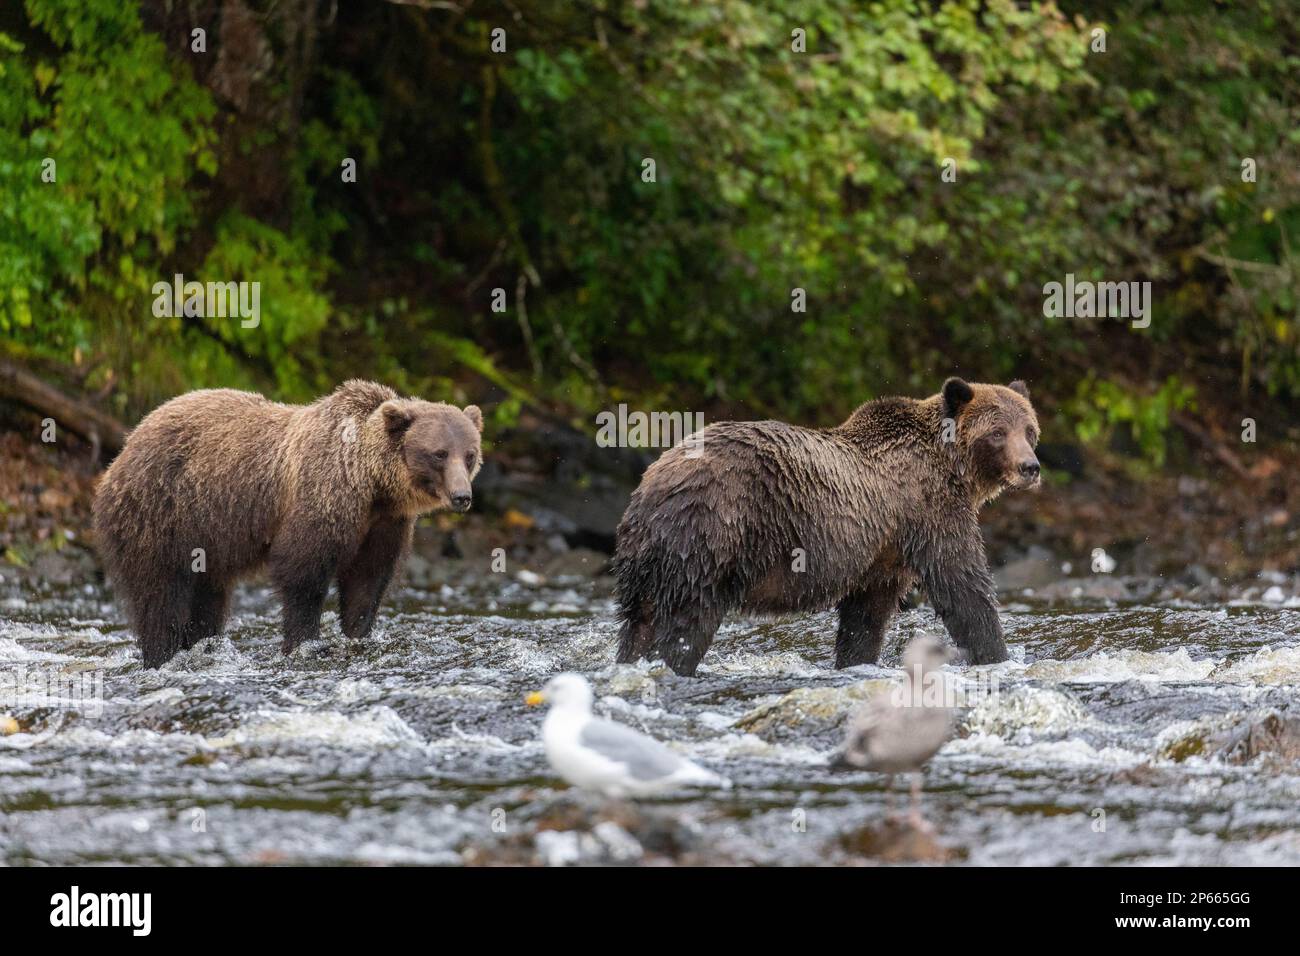 Ours bruns frères (Ursus arctos), le long du ruisseau de saumon rose sur l'île Chichagof, Alaska, États-Unis d'Amérique, Amérique du Nord Banque D'Images